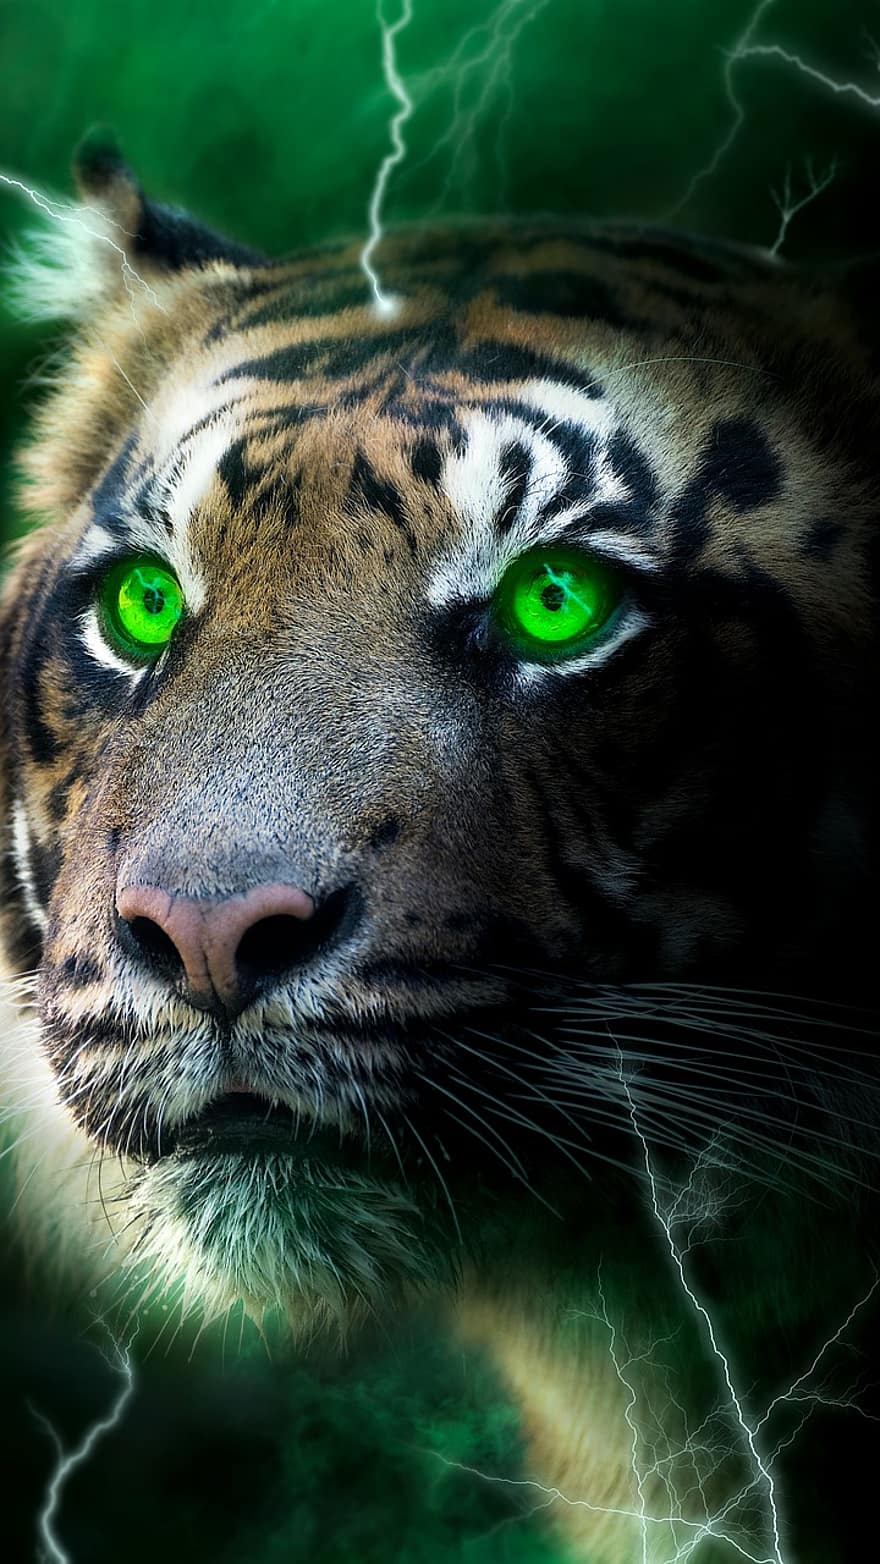 Tigre, relámpago, oscuro, brillar, verde, niebla, papel pintado, felino, animales en la naturaleza, cabeza de animal, gato no domesticado